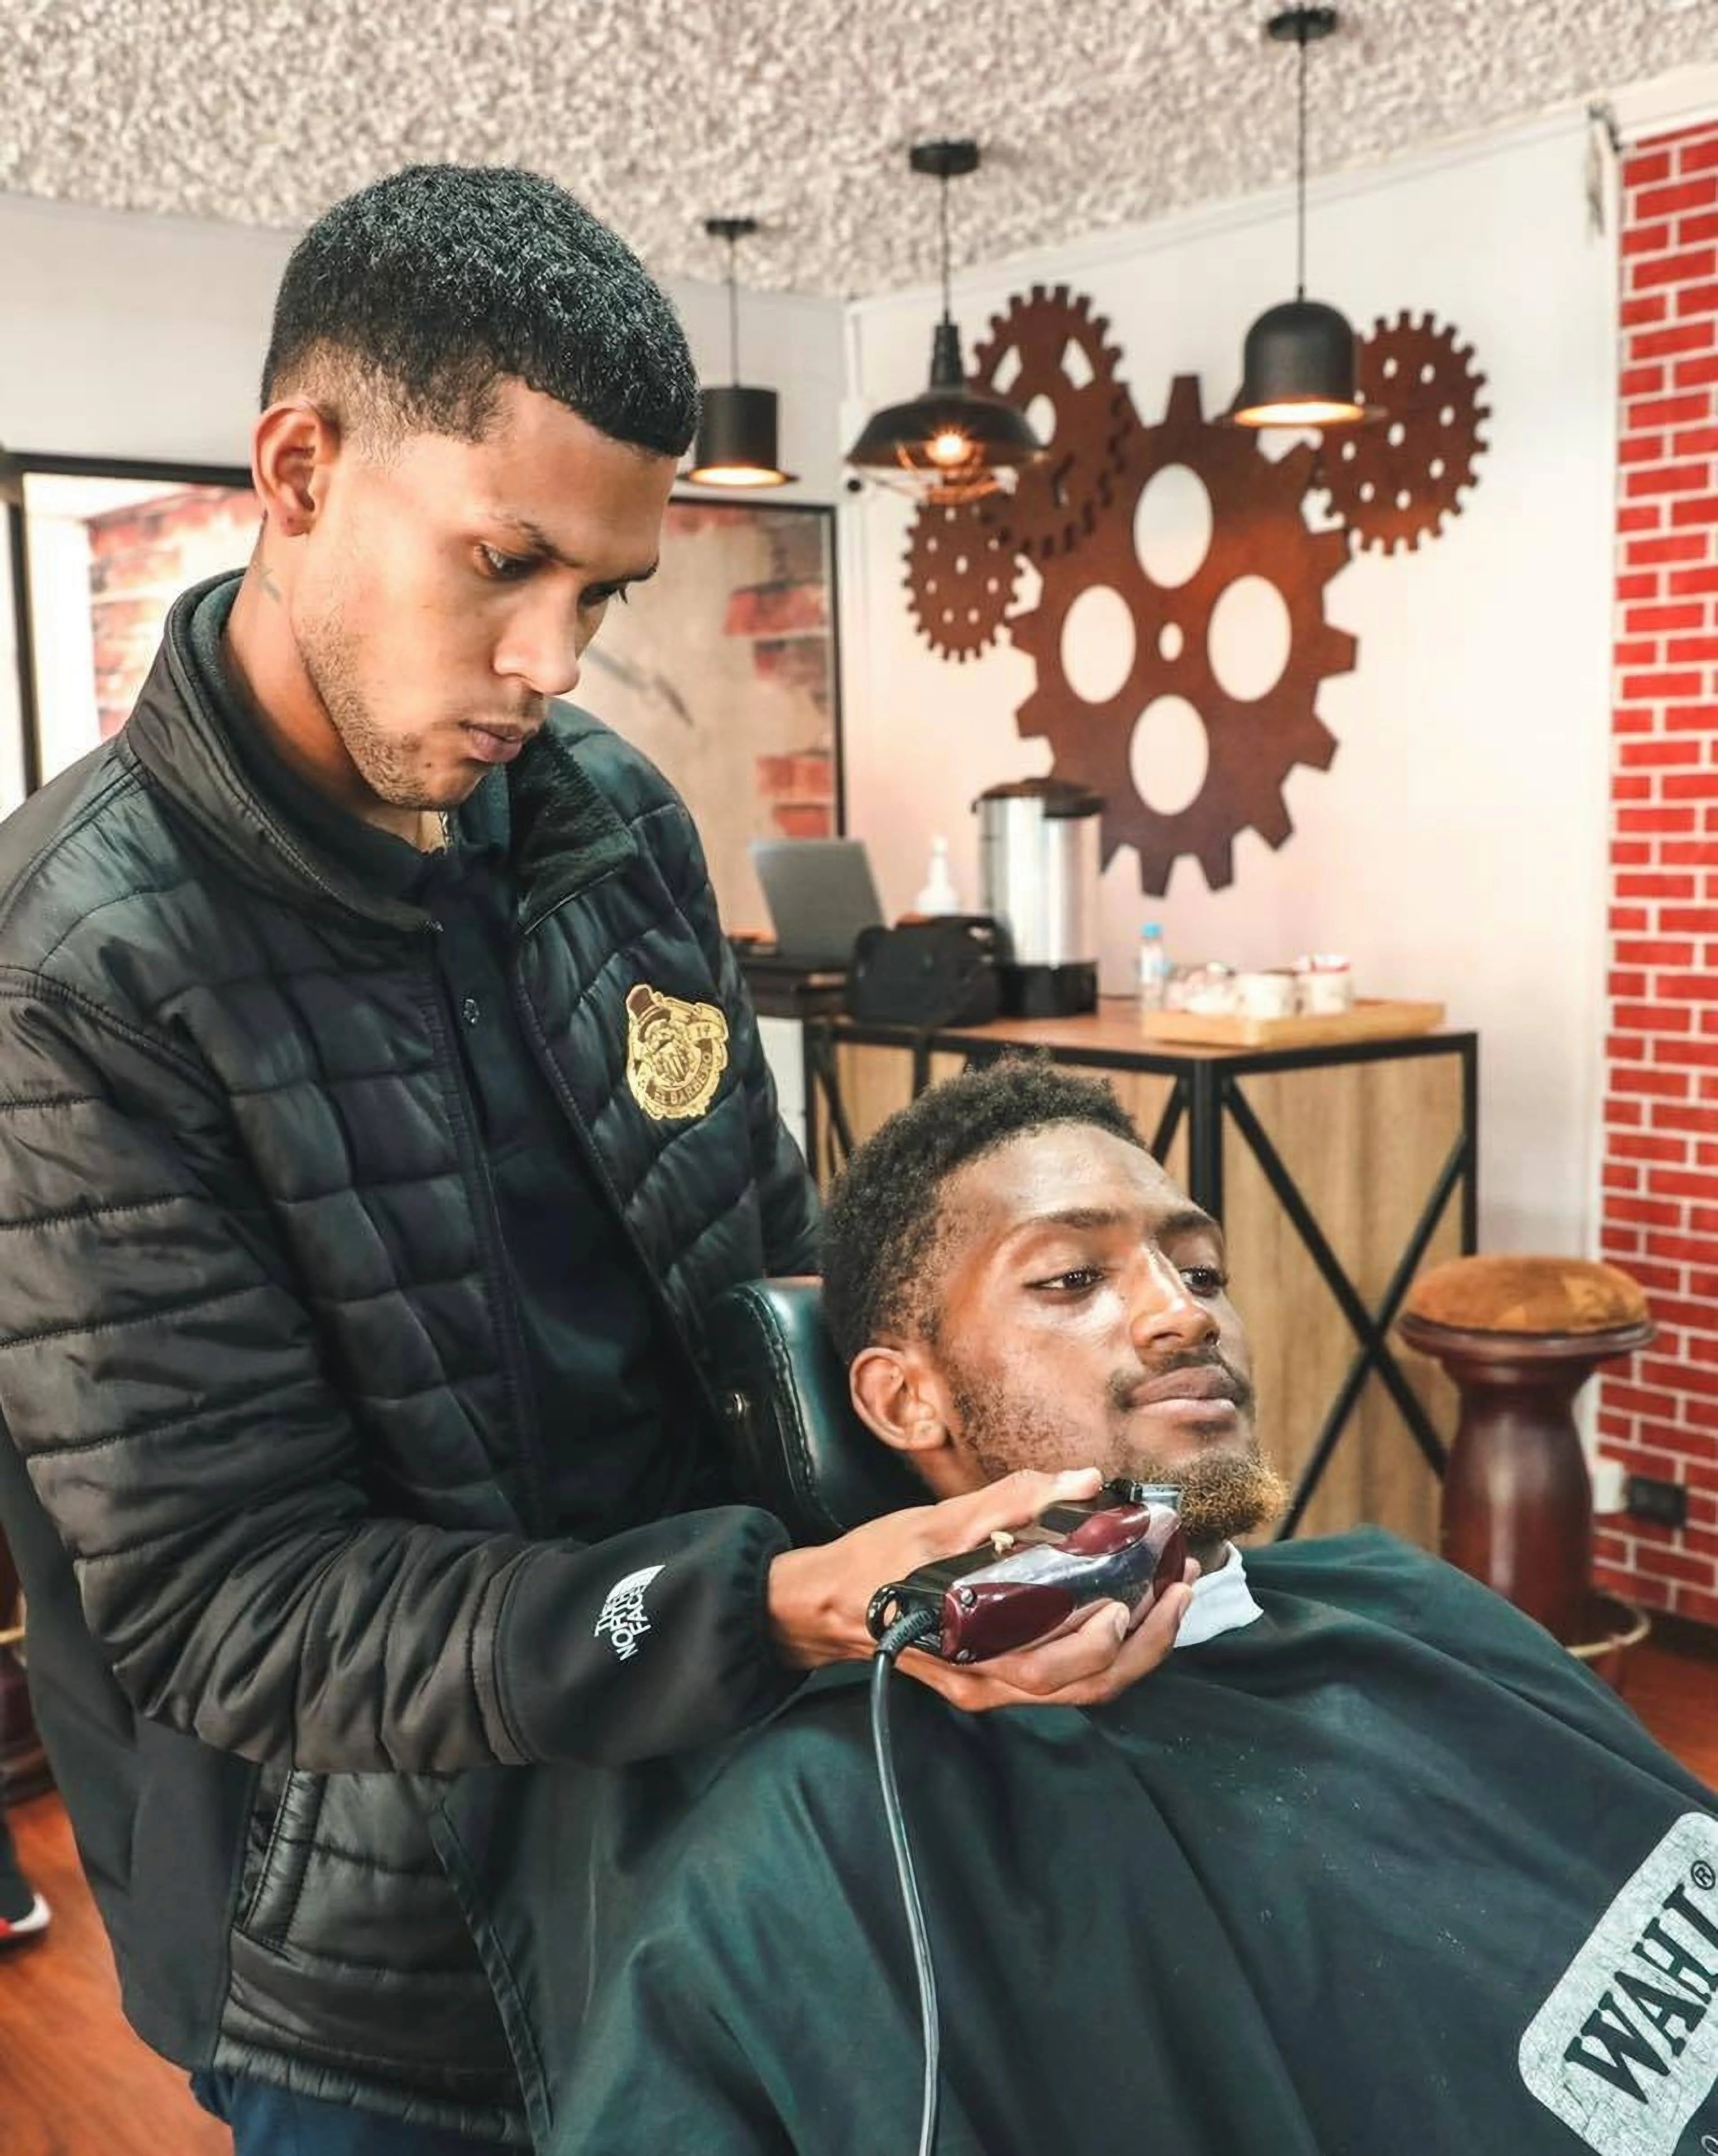 Barbería-el-barbero-8672